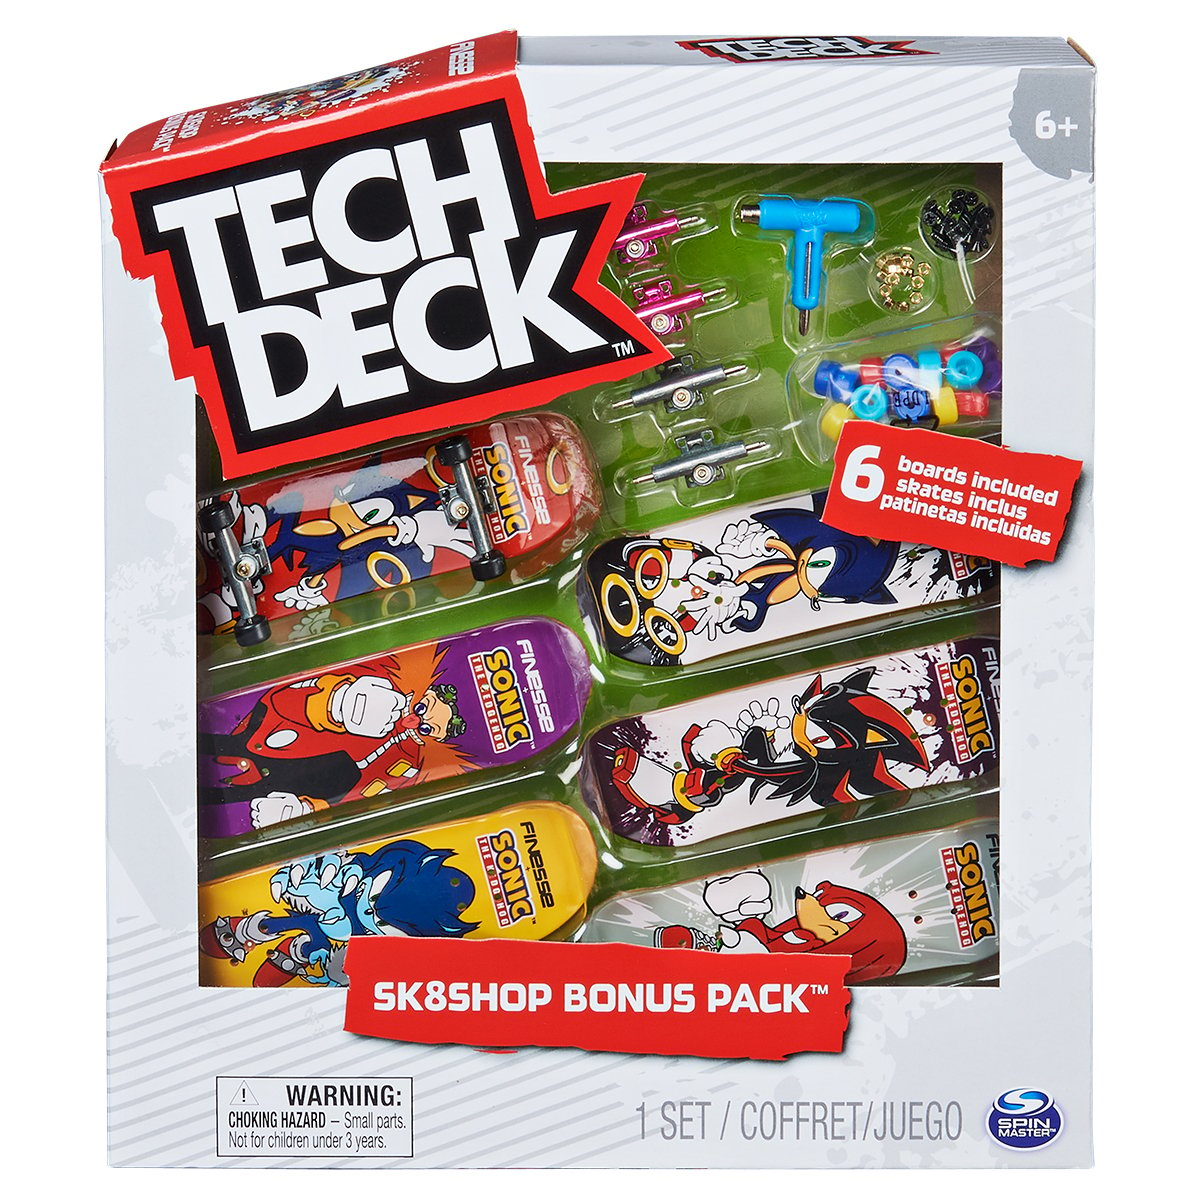 Set 6 mini placi skateboard, Tech Deck, Bonus Pack 20131276